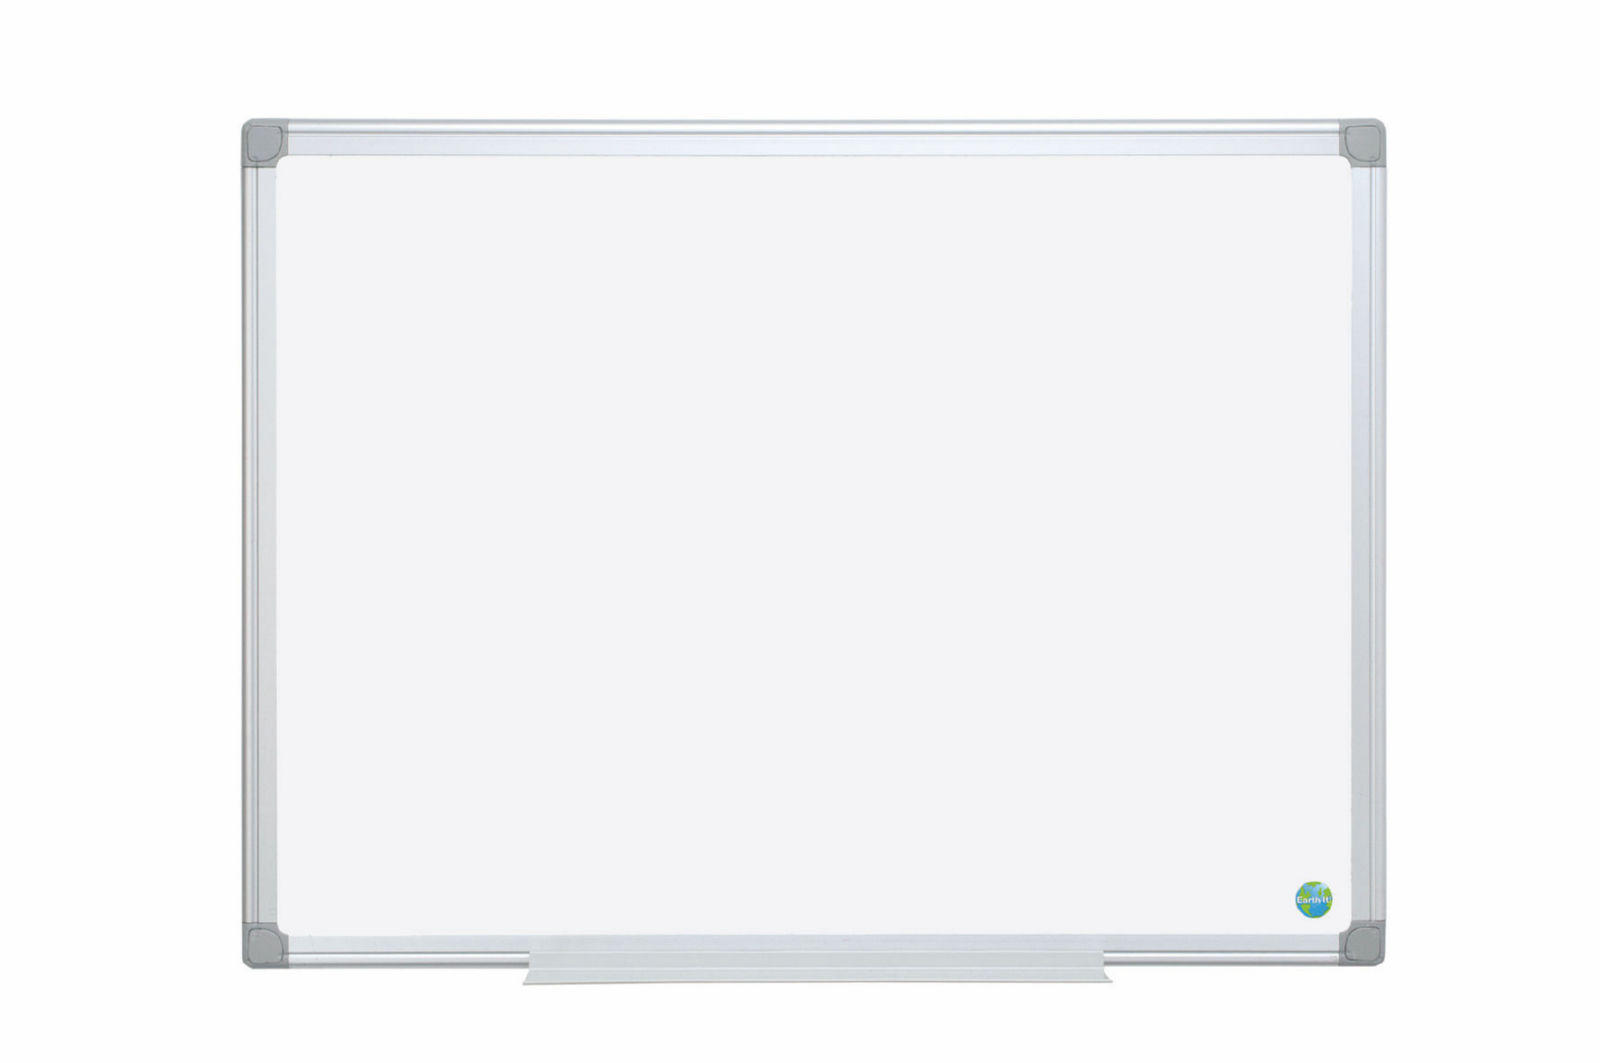 Bi-Office Earth-It Non Magnetic Melamine Whiteboard Aluminium Frame 900x600mm